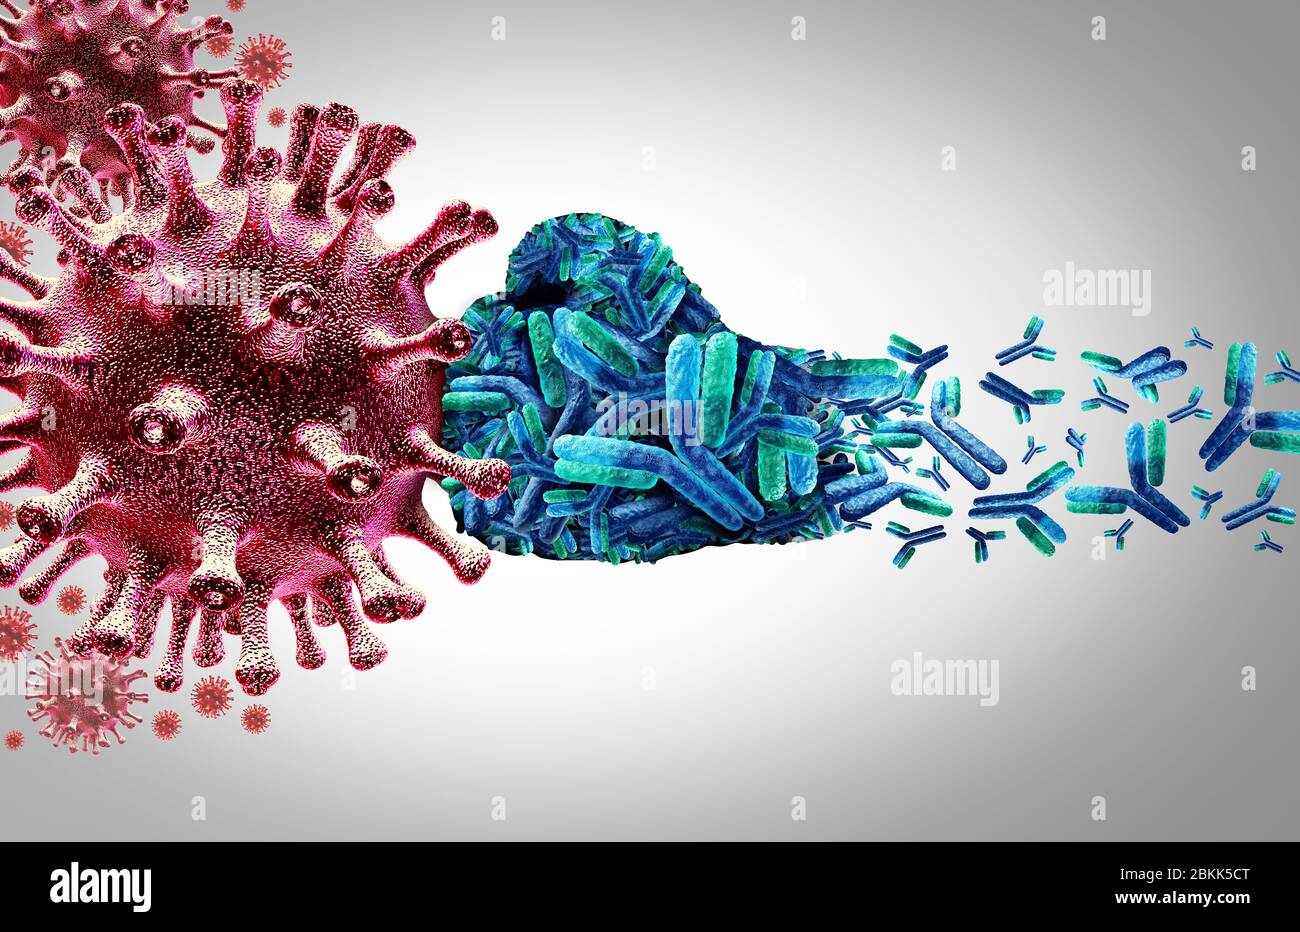 Anticuerpo vírico e inmunoglobulina concepto como anticuerpos que atacan a las células víricas contagiosas y patógenos como ilustración 3D. Foto de stock